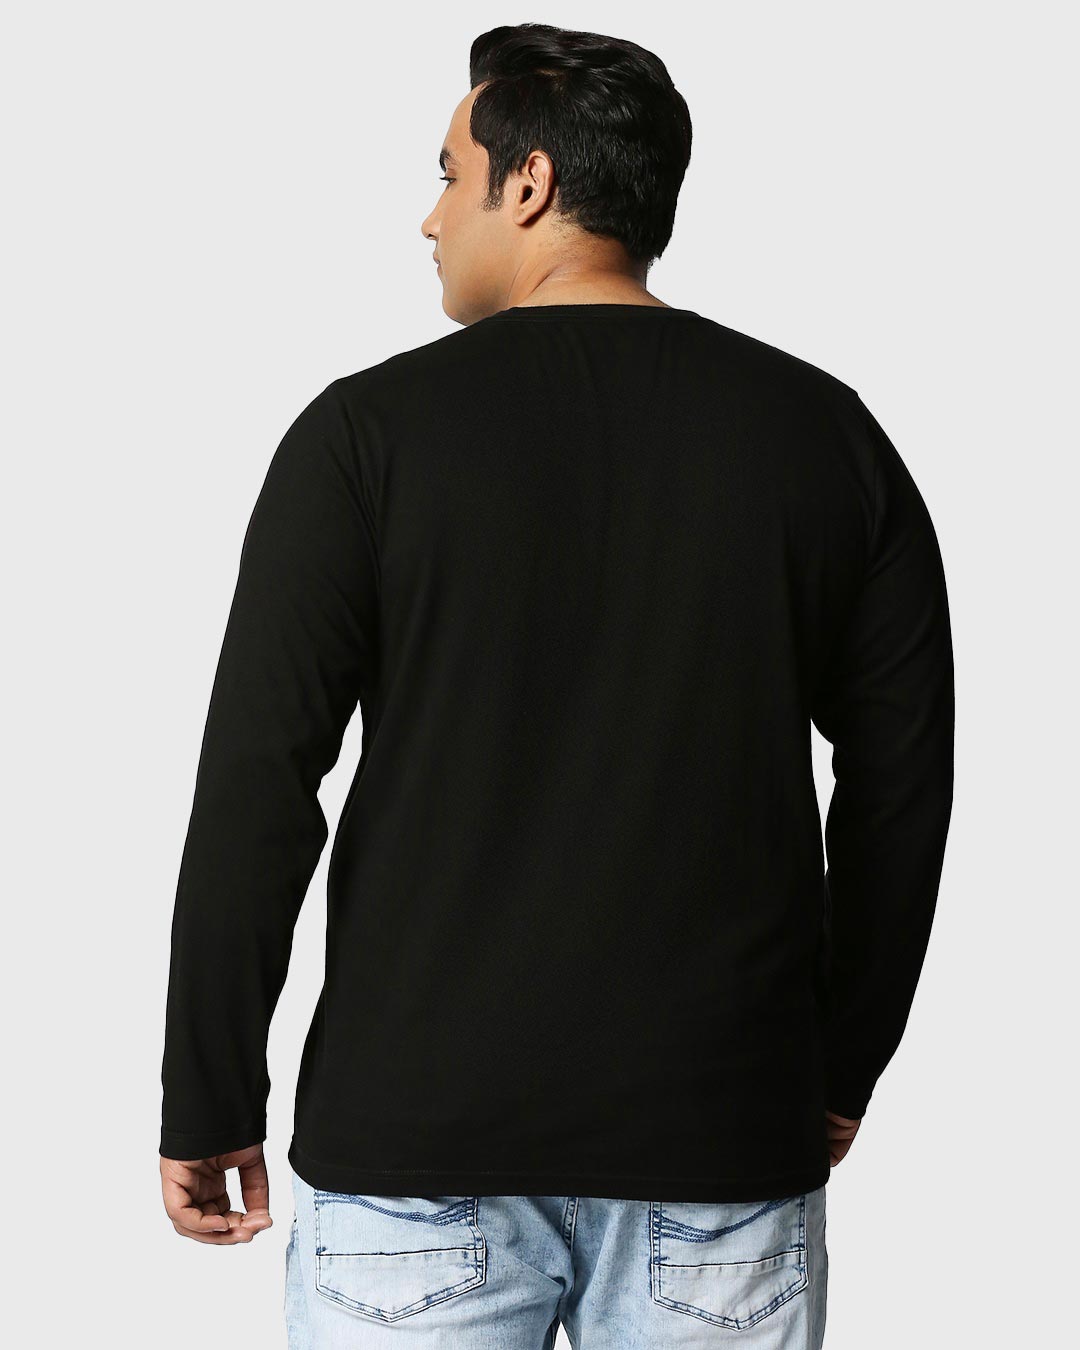 Shop Men's Black CR 200M Graphic Printed Plus Size T-shirt-Back